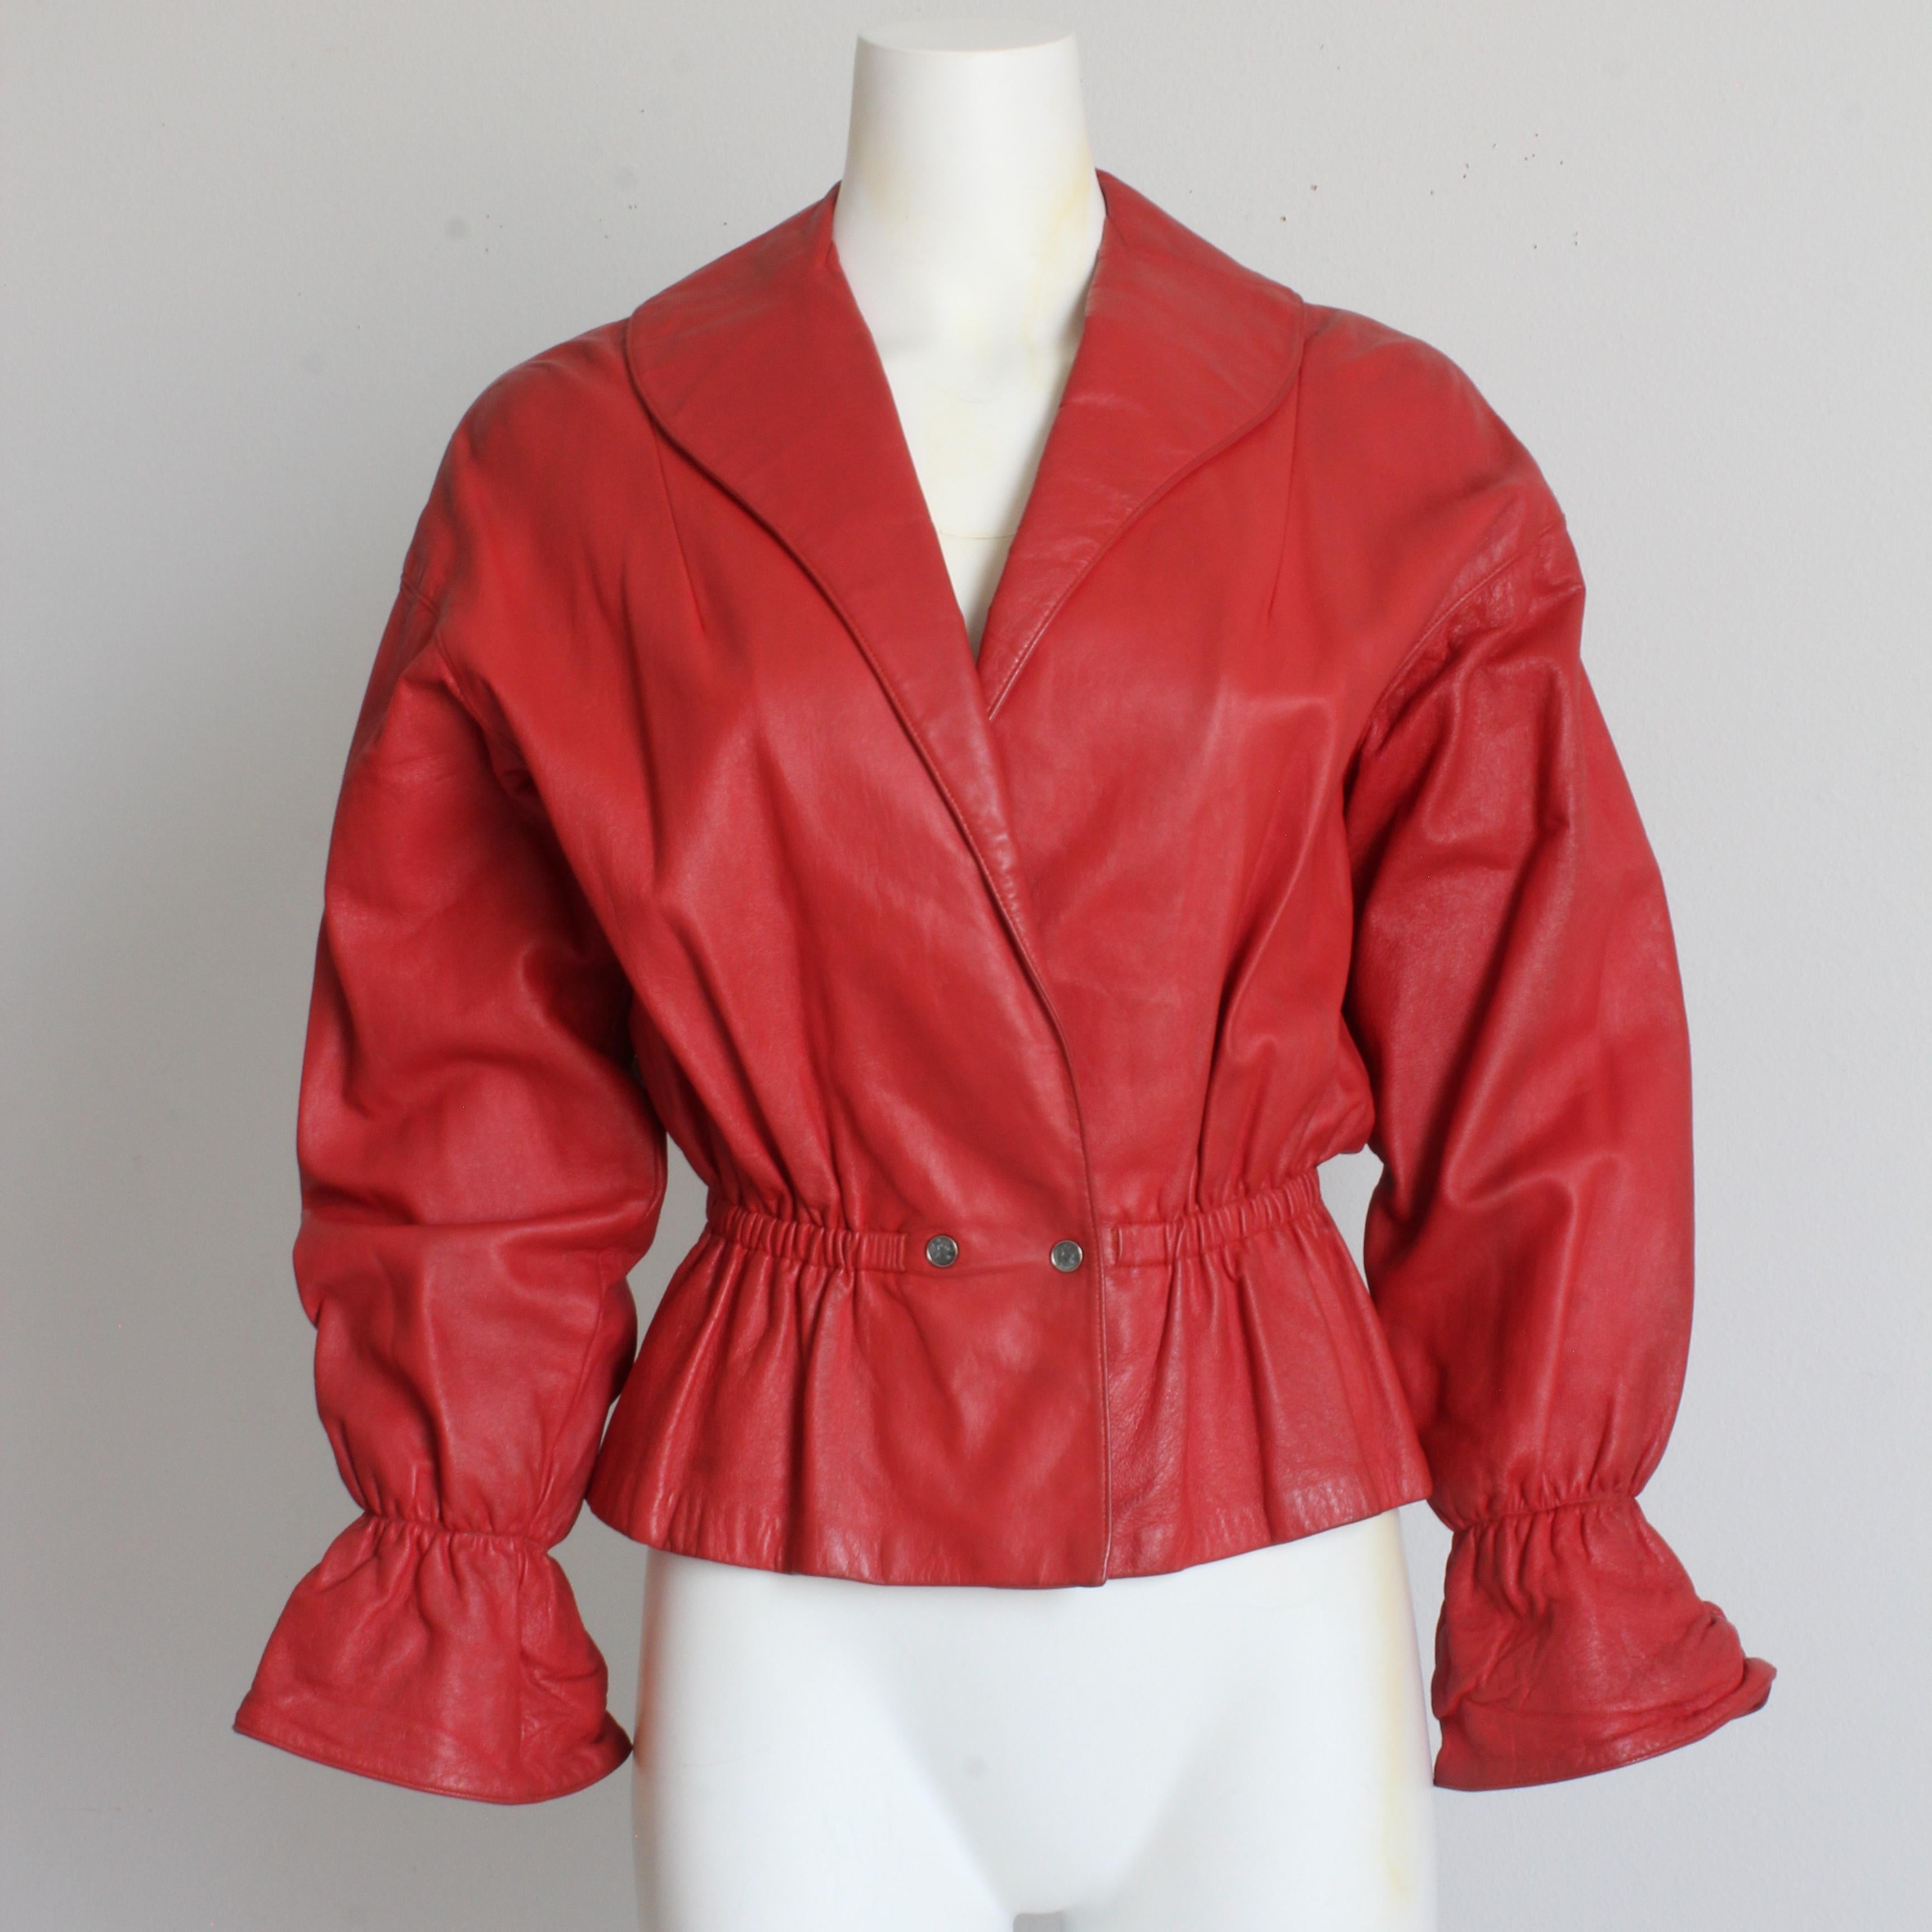 Authentique veste en cuir rouge vintage de Bonnie Cashin pour Sills, datant du début des années 60. 

Un style incroyablement rare de la mère du sportswear américain moderne !  Réalisée en cuir rouge, elle présente des manches Dolman, un col châle,